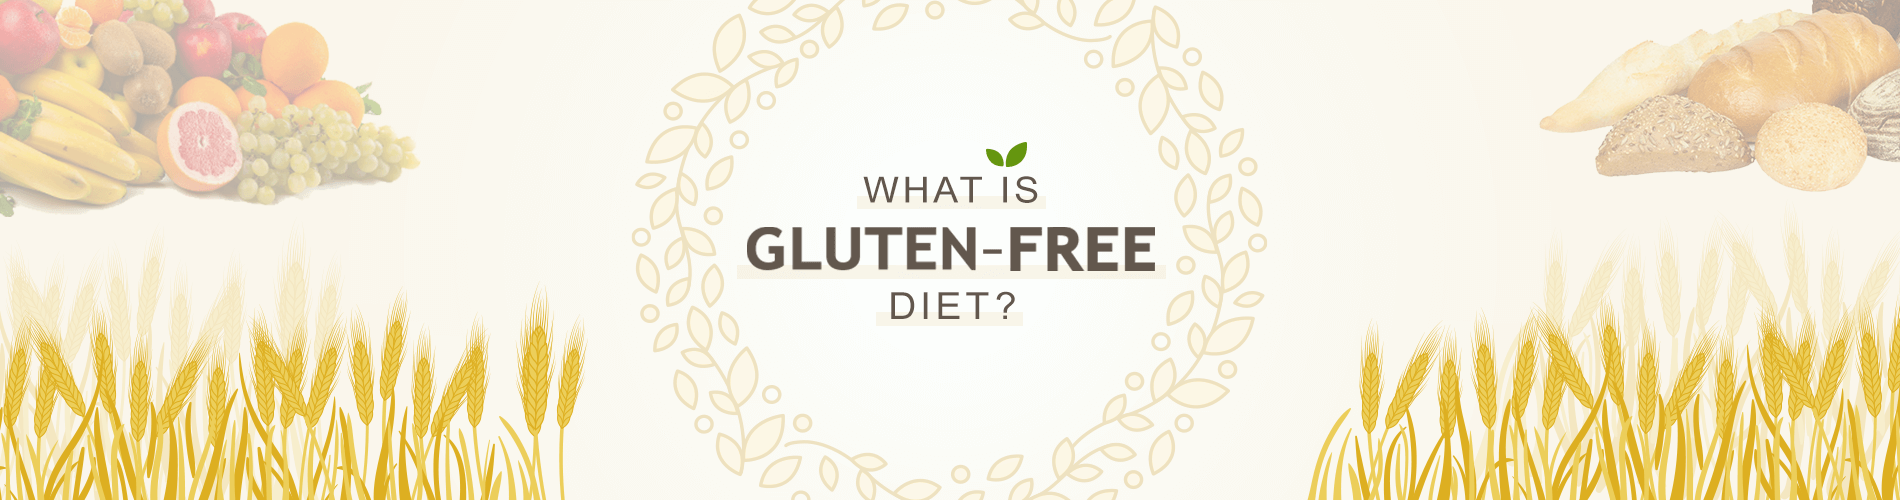 What is Gluten-free Diet?